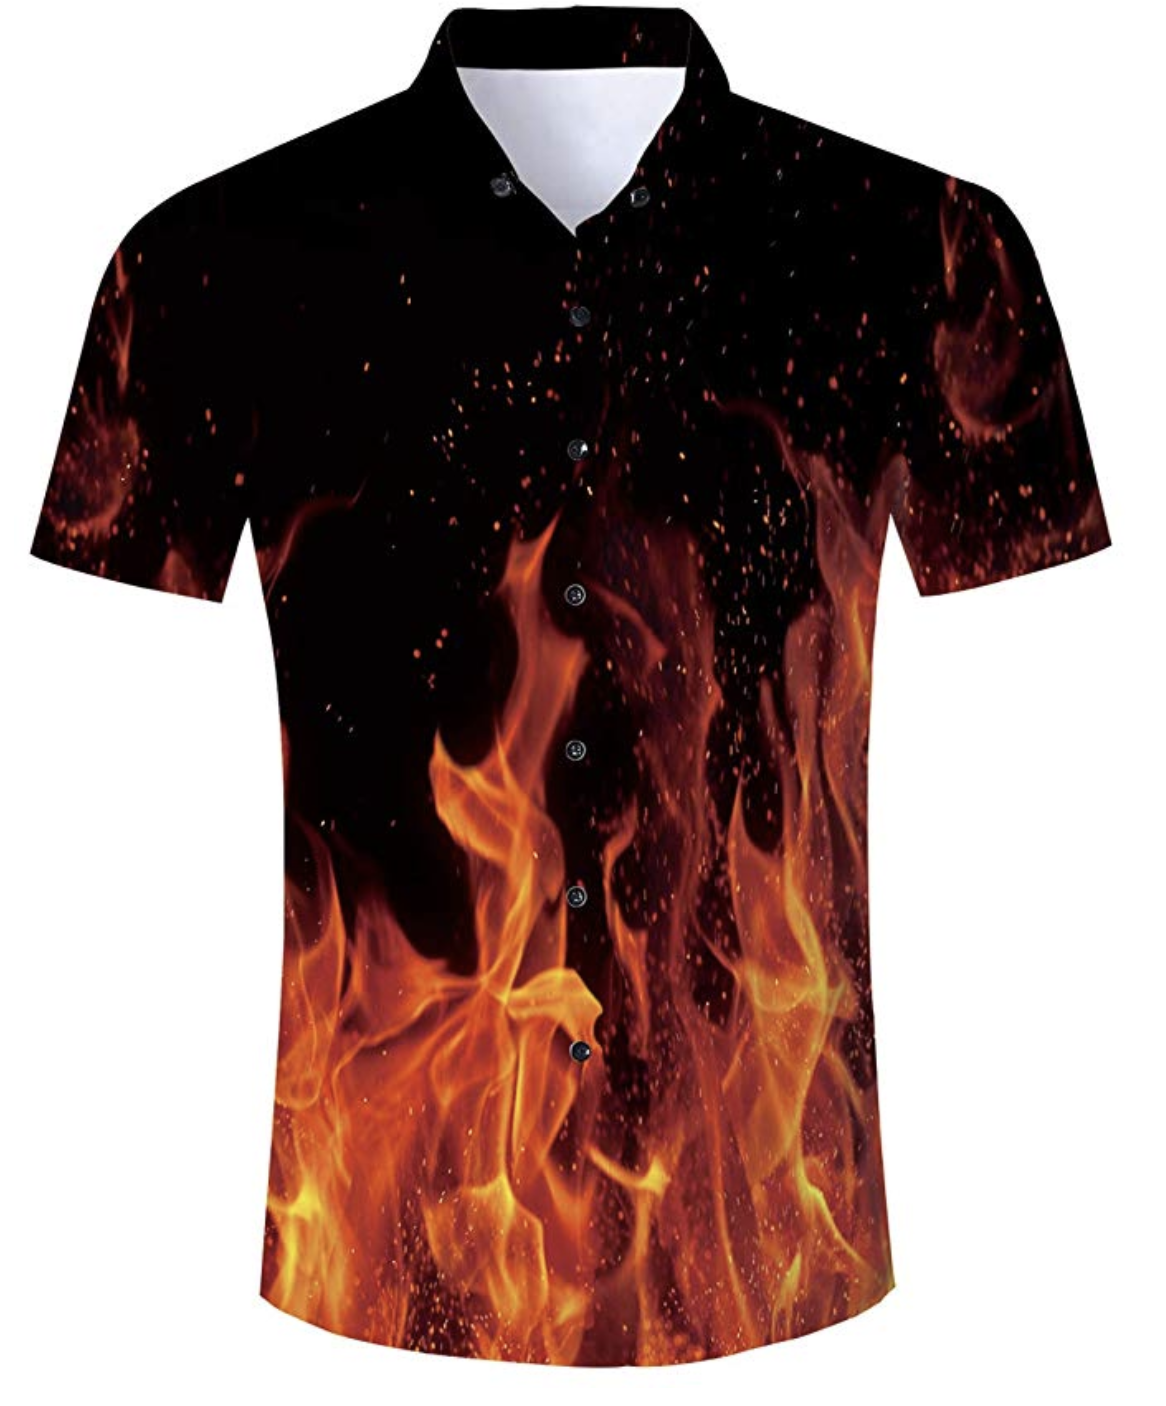 Fire Shirt, $25